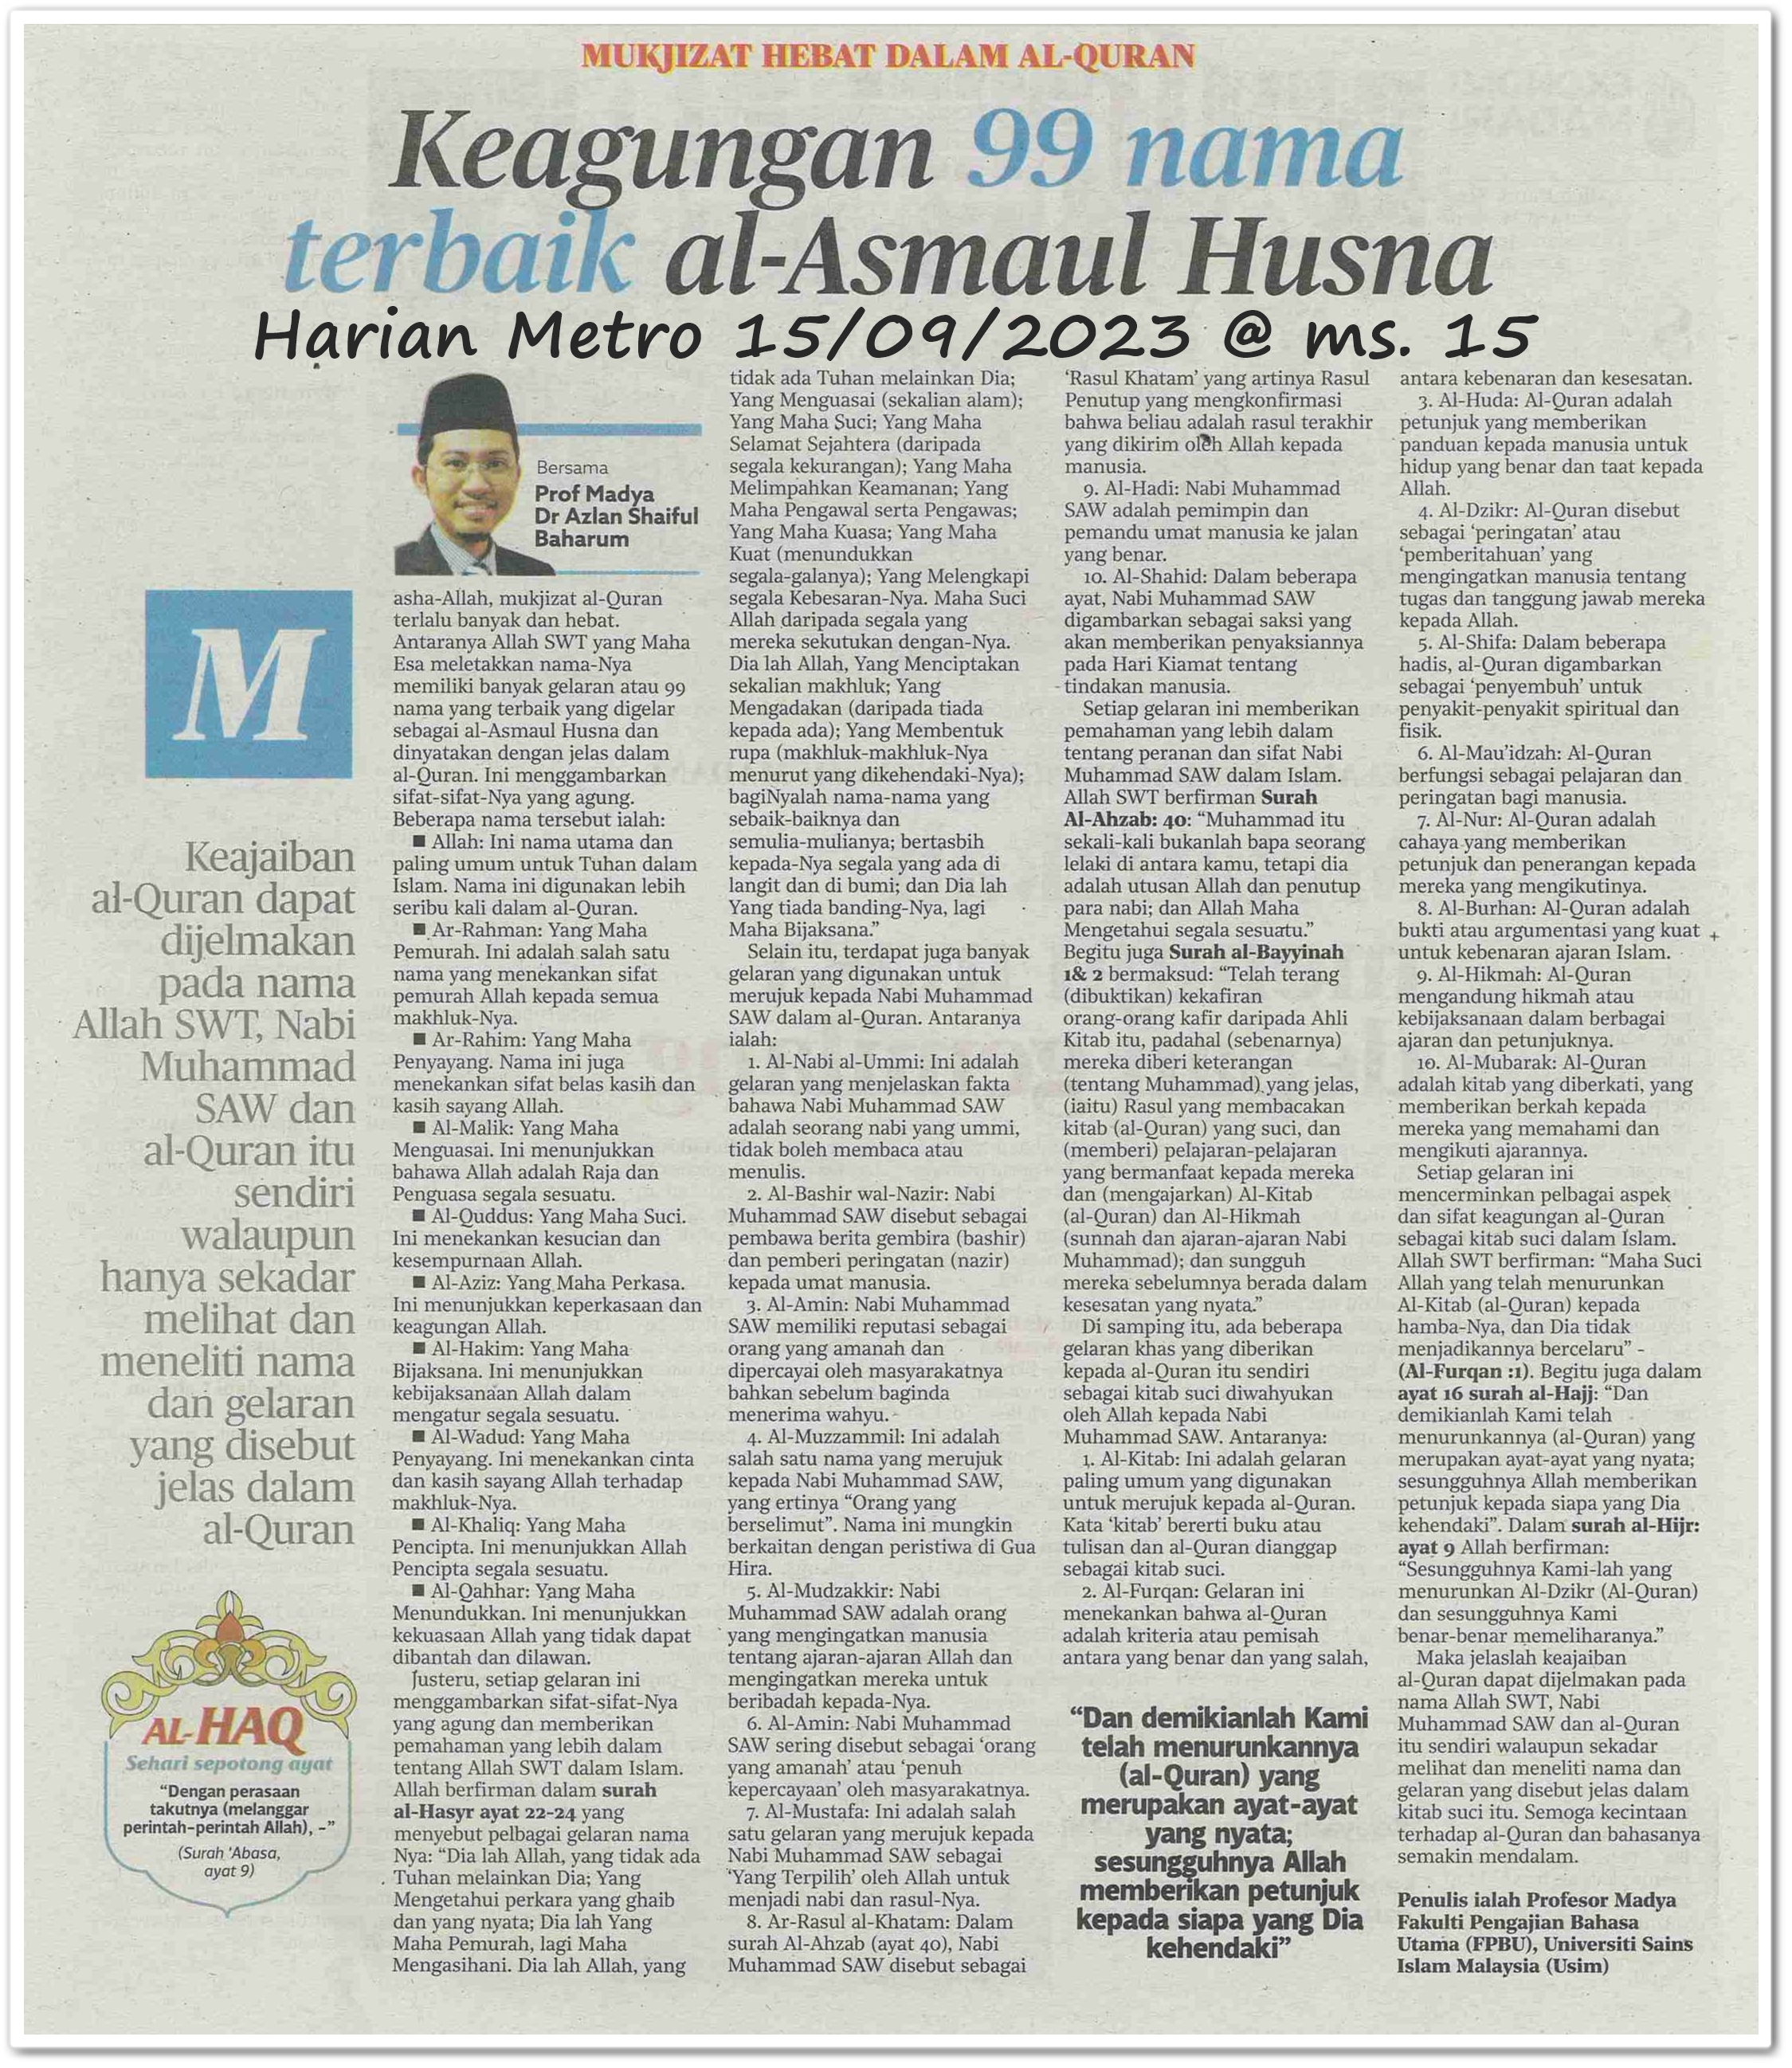 Keagungan 99 nama terbaik al-Asmaul Husna ; Mukjizat hebat dalam Al-Quran